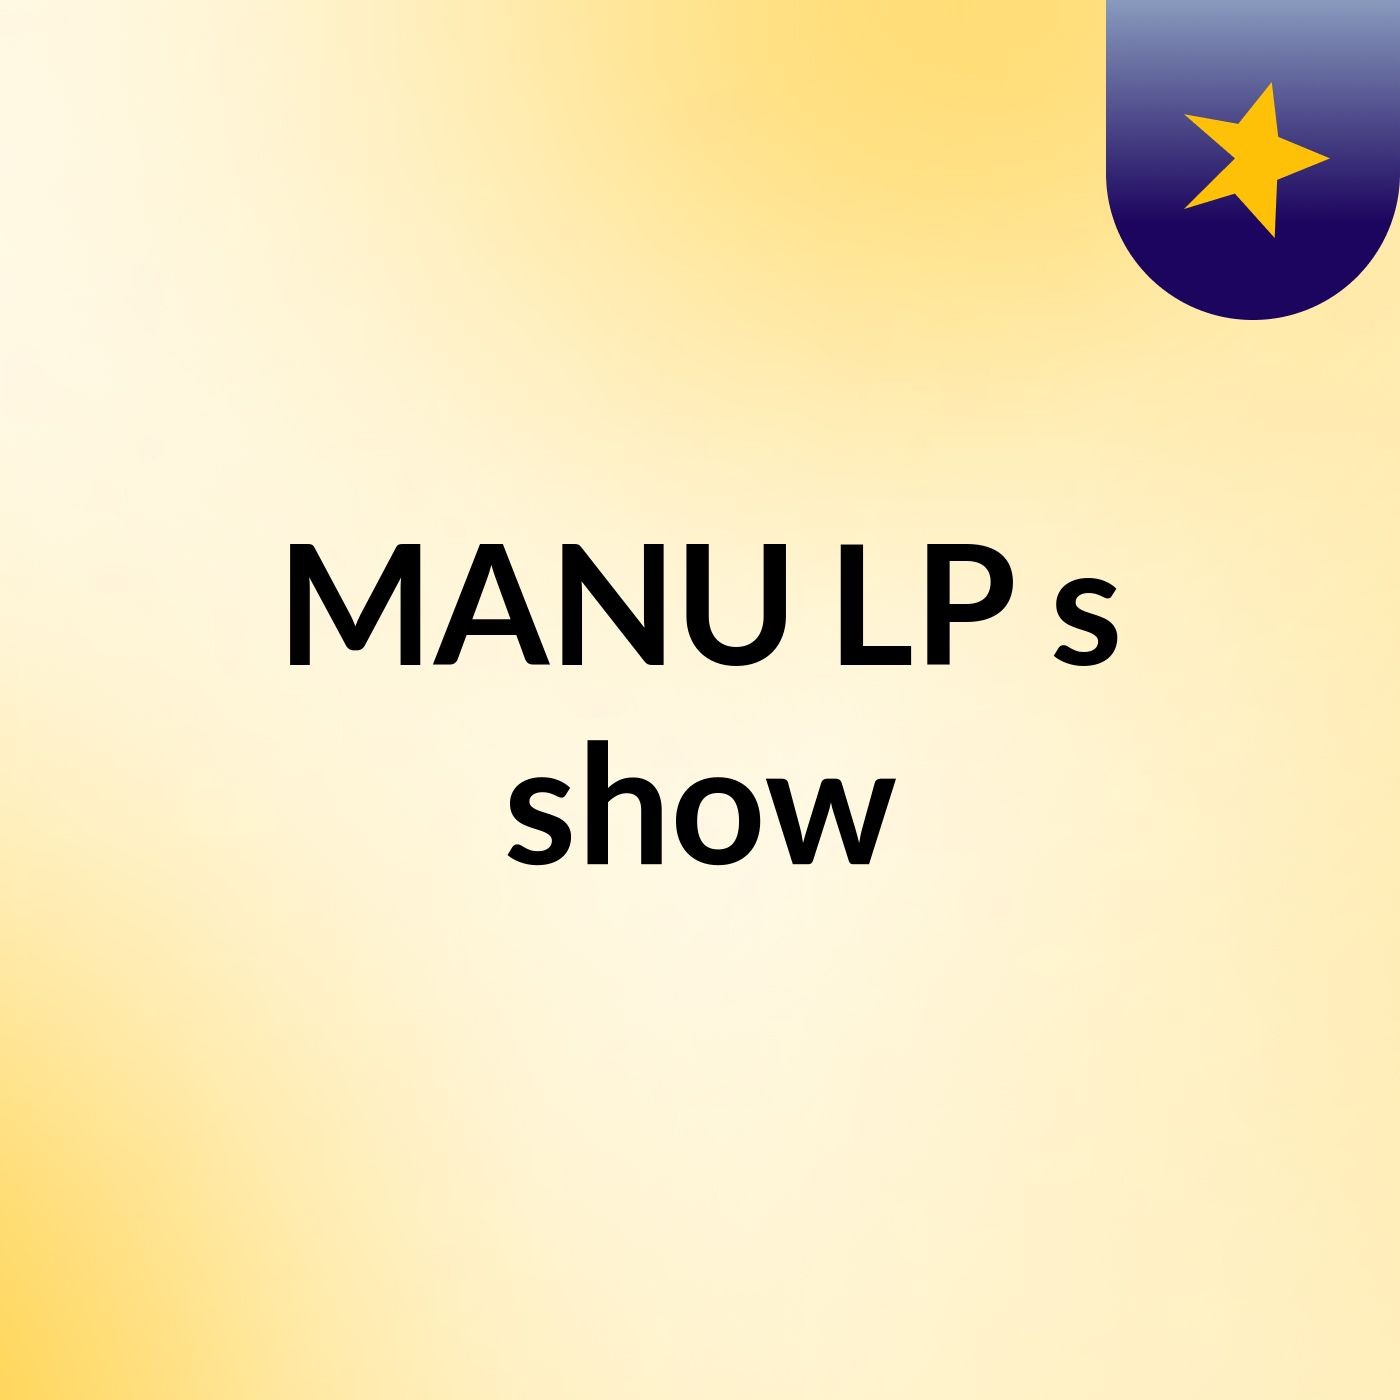 MANU LP's show